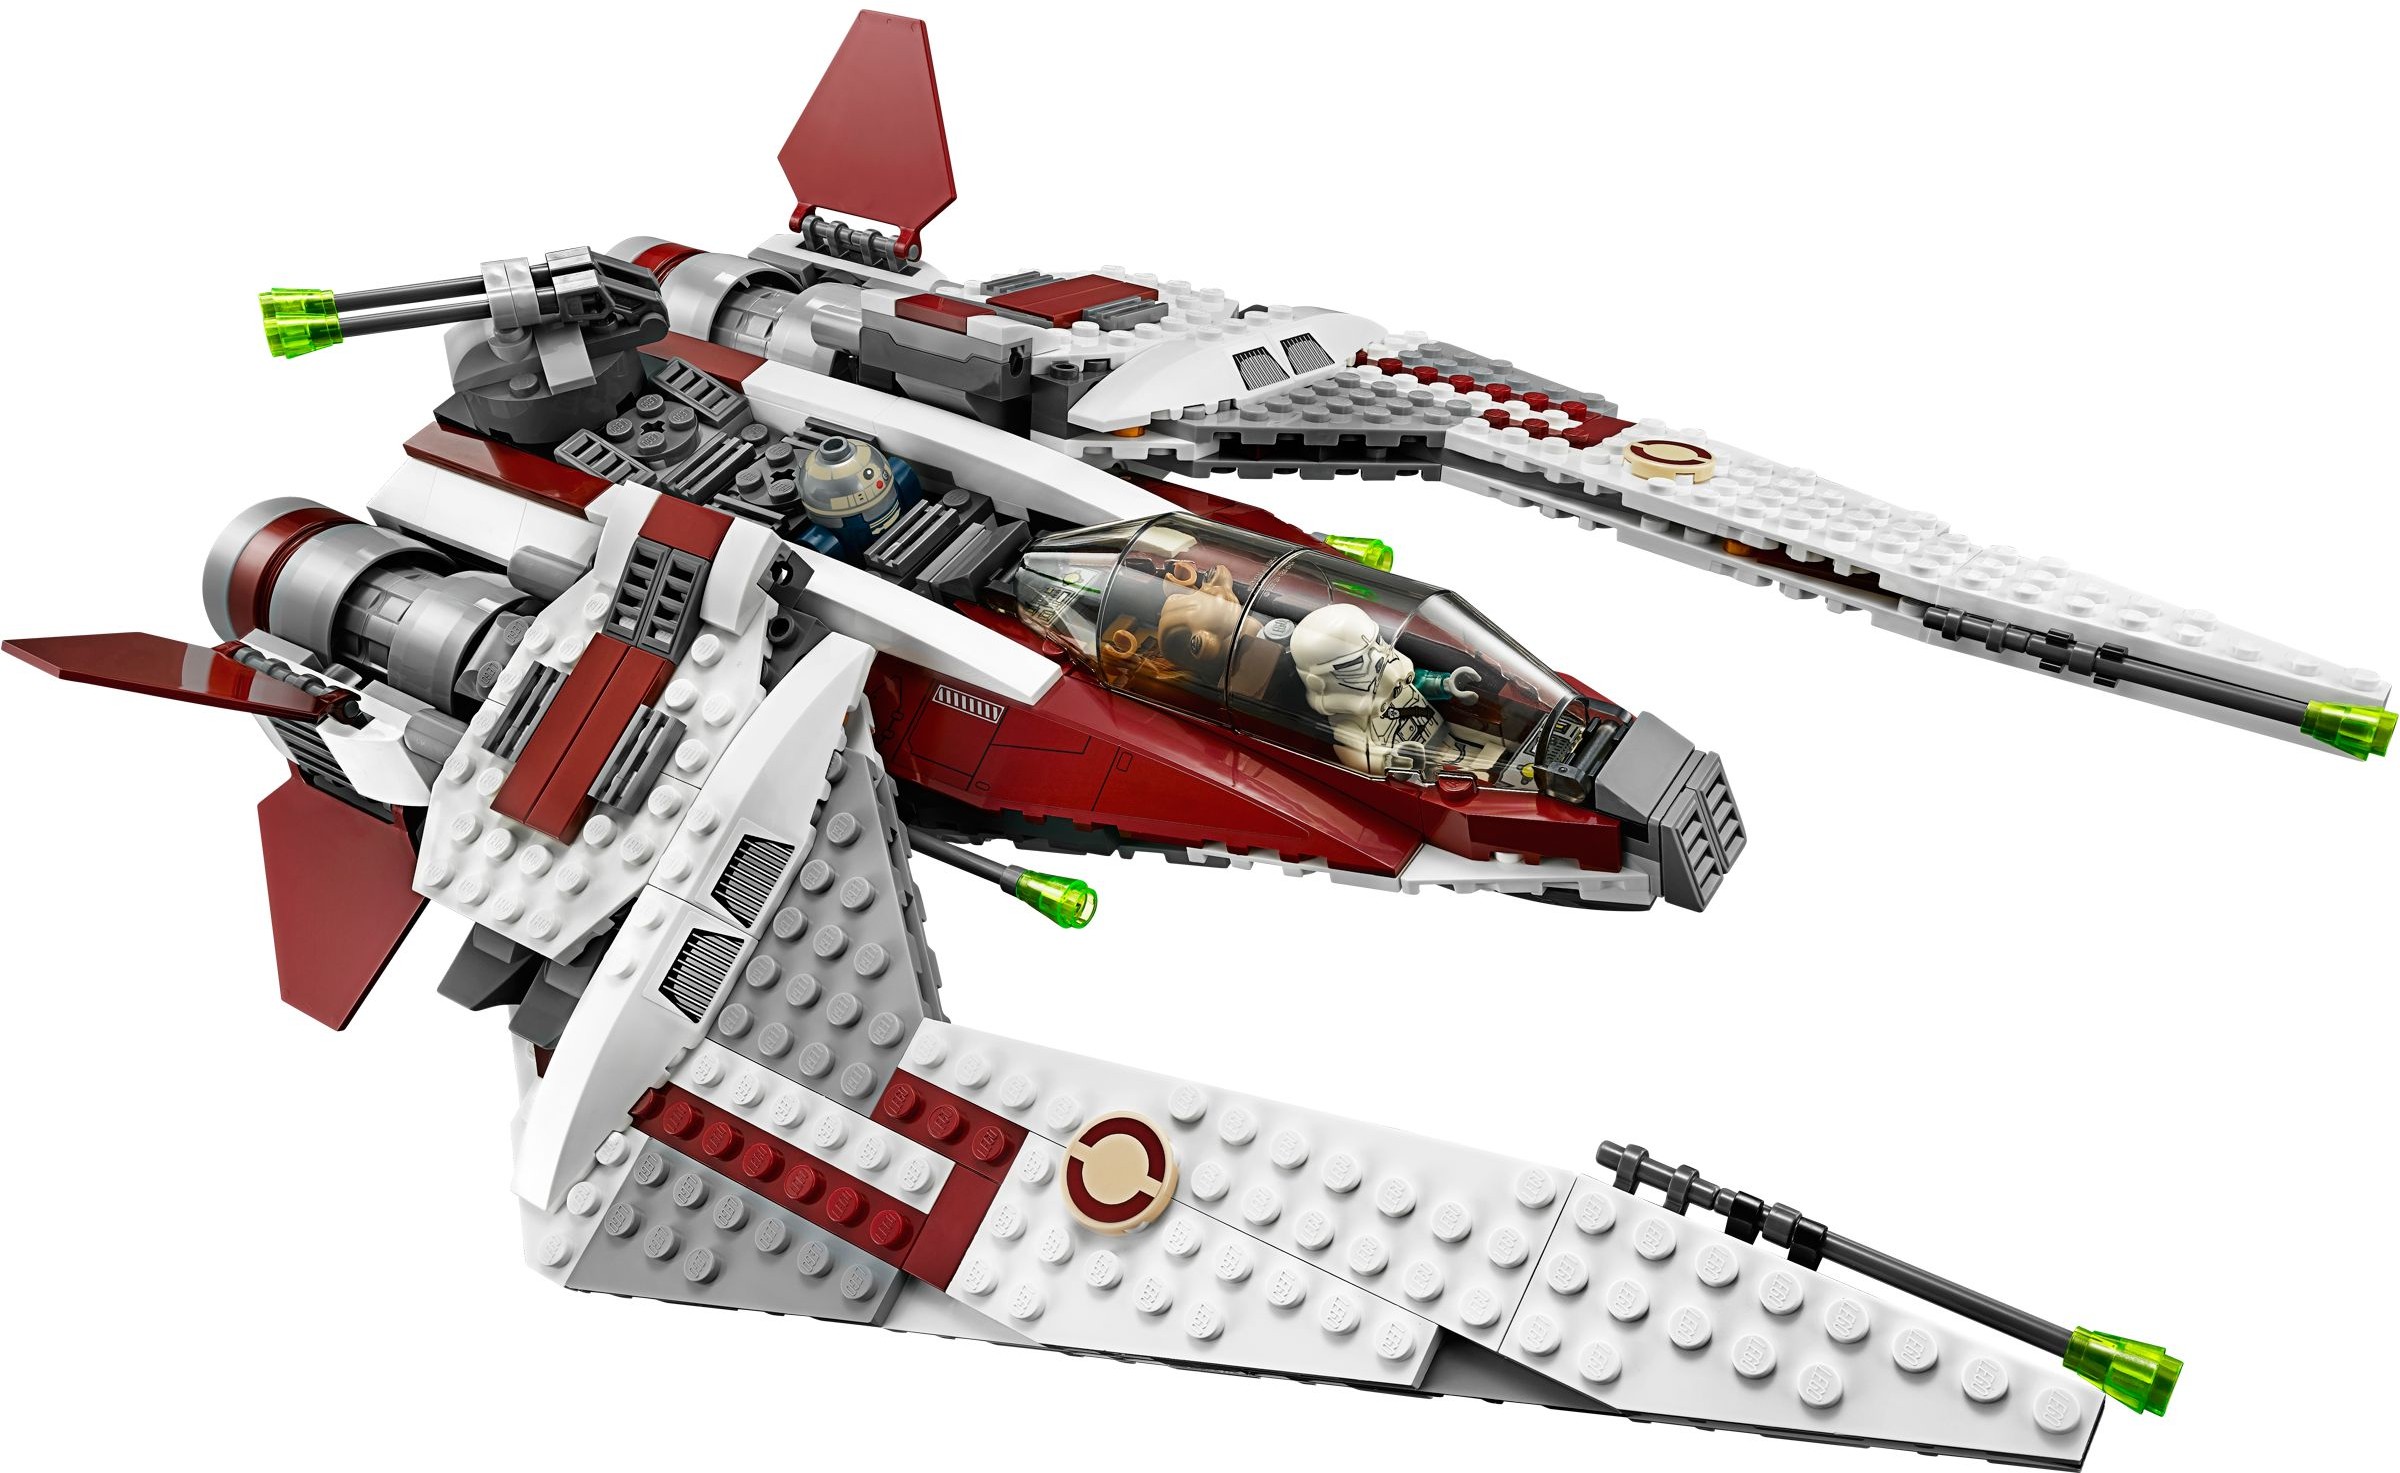 Lego ® Star Wars ™ 75051 Jedi ™ Scout Fighter nuevo embalaje original New misb NRFB 